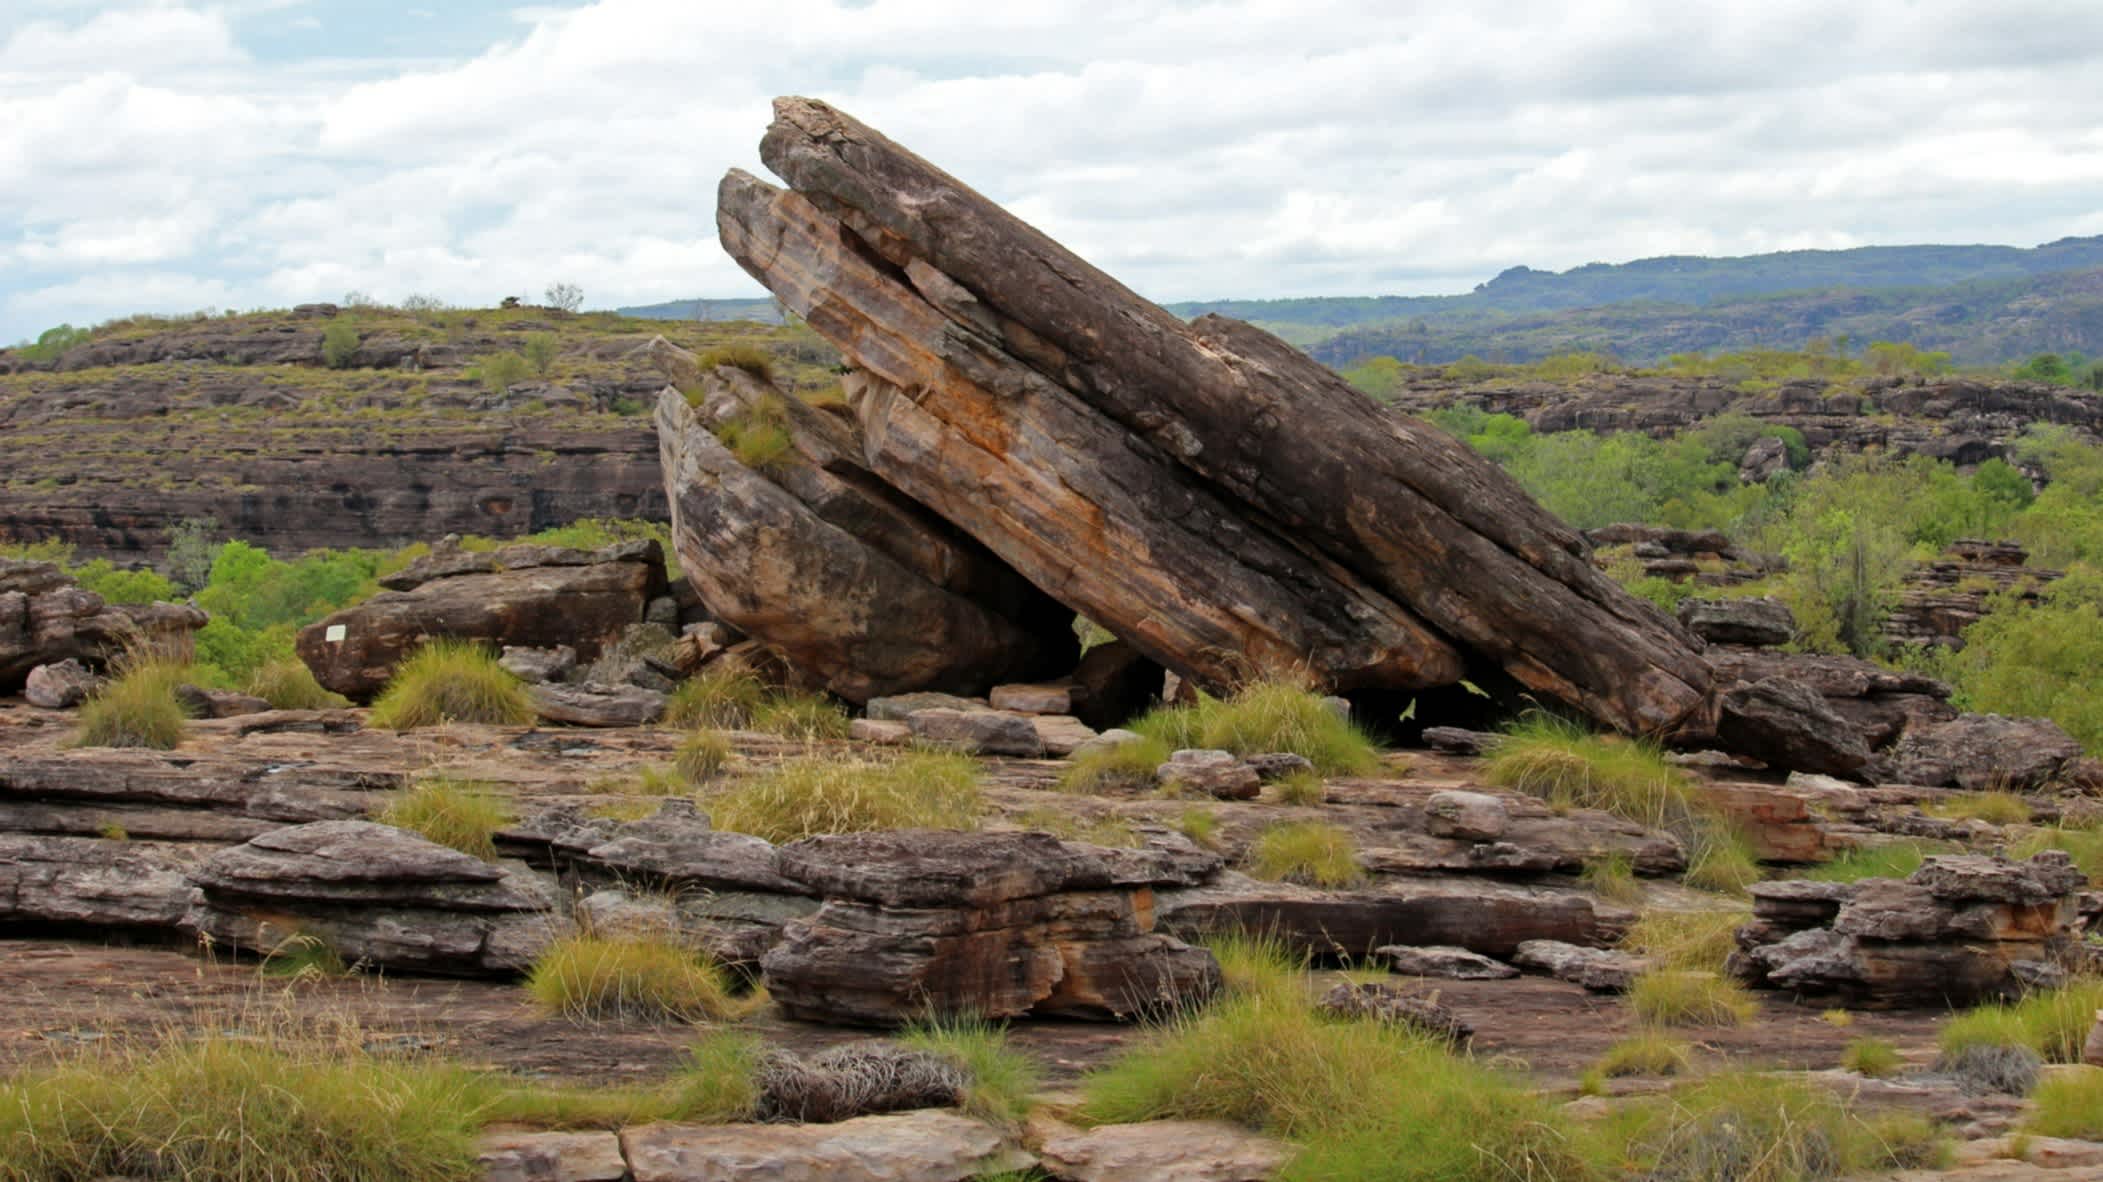 Blick auf den Ubirr Rock im Kakadu Nationalpark, Australien.